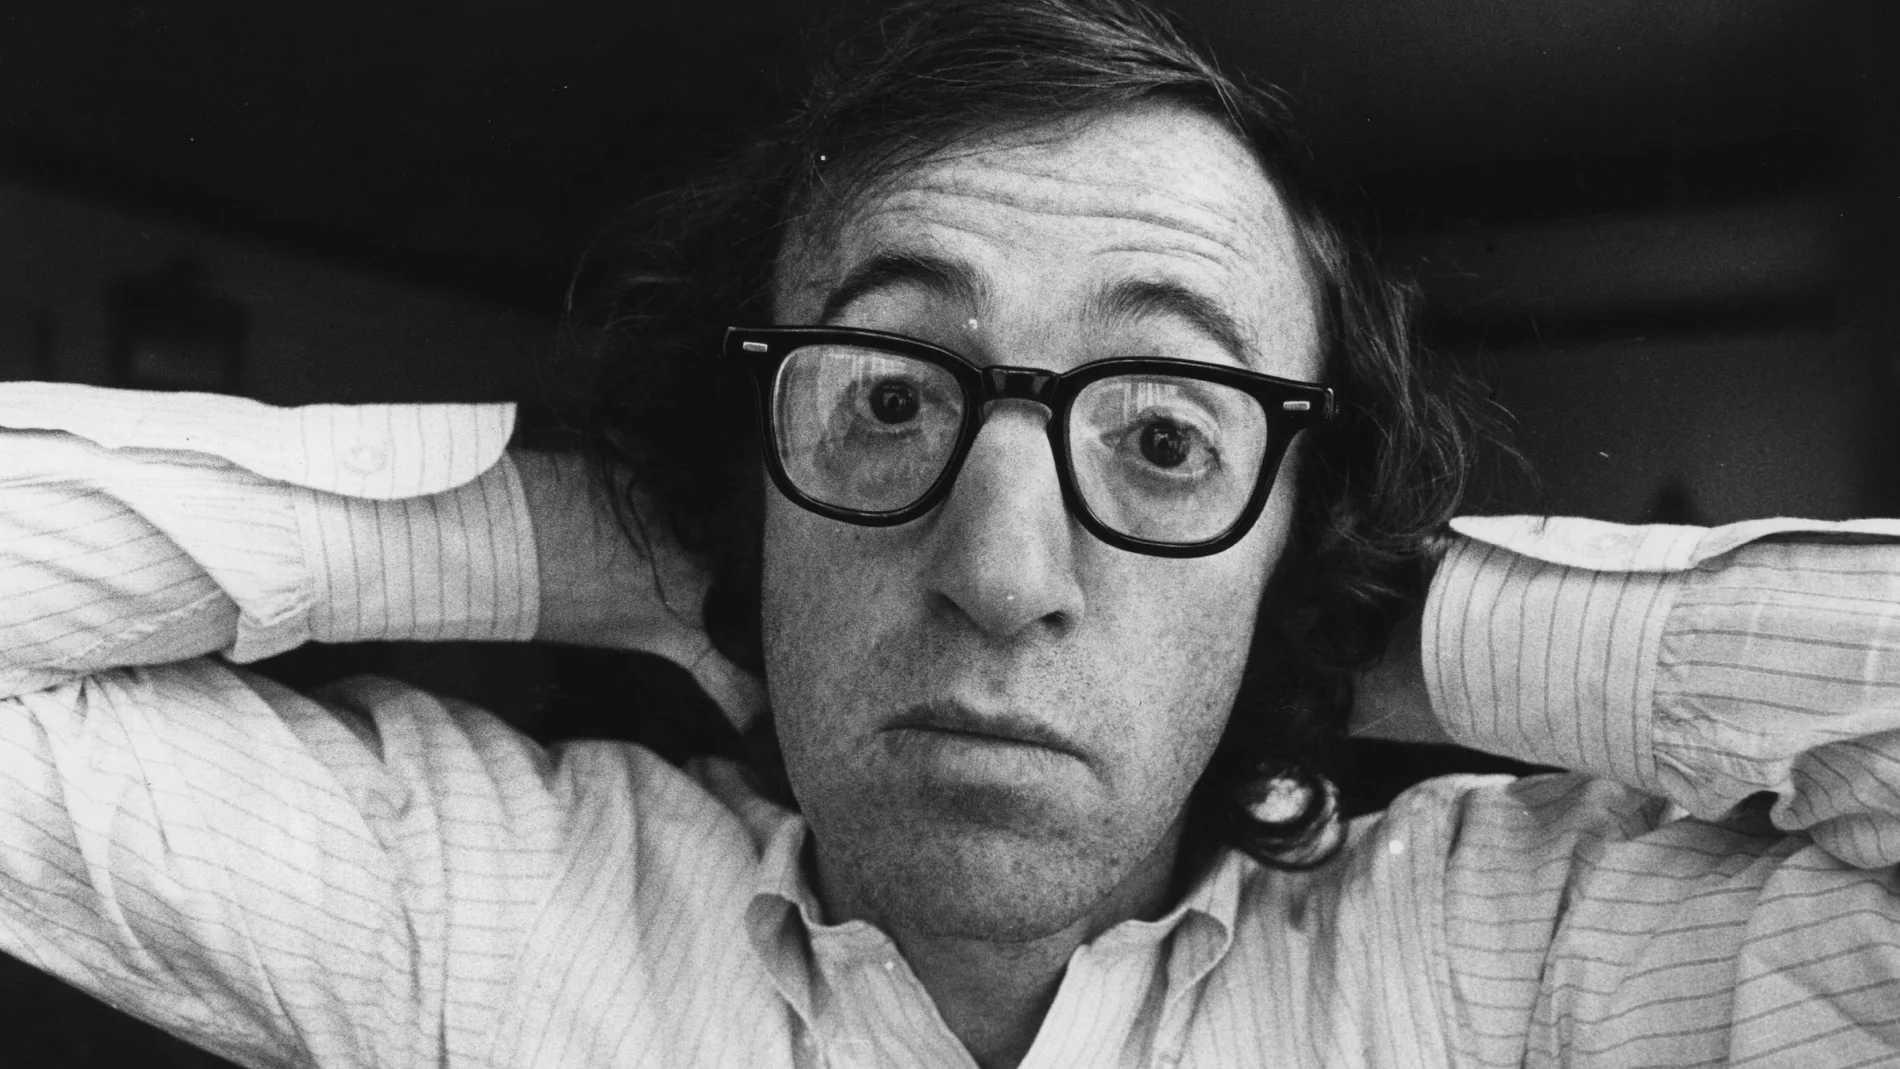 Woody Allen encarna el humor judío que trata con desenfado la figura de Dios y el pasado de su cultura en el cine